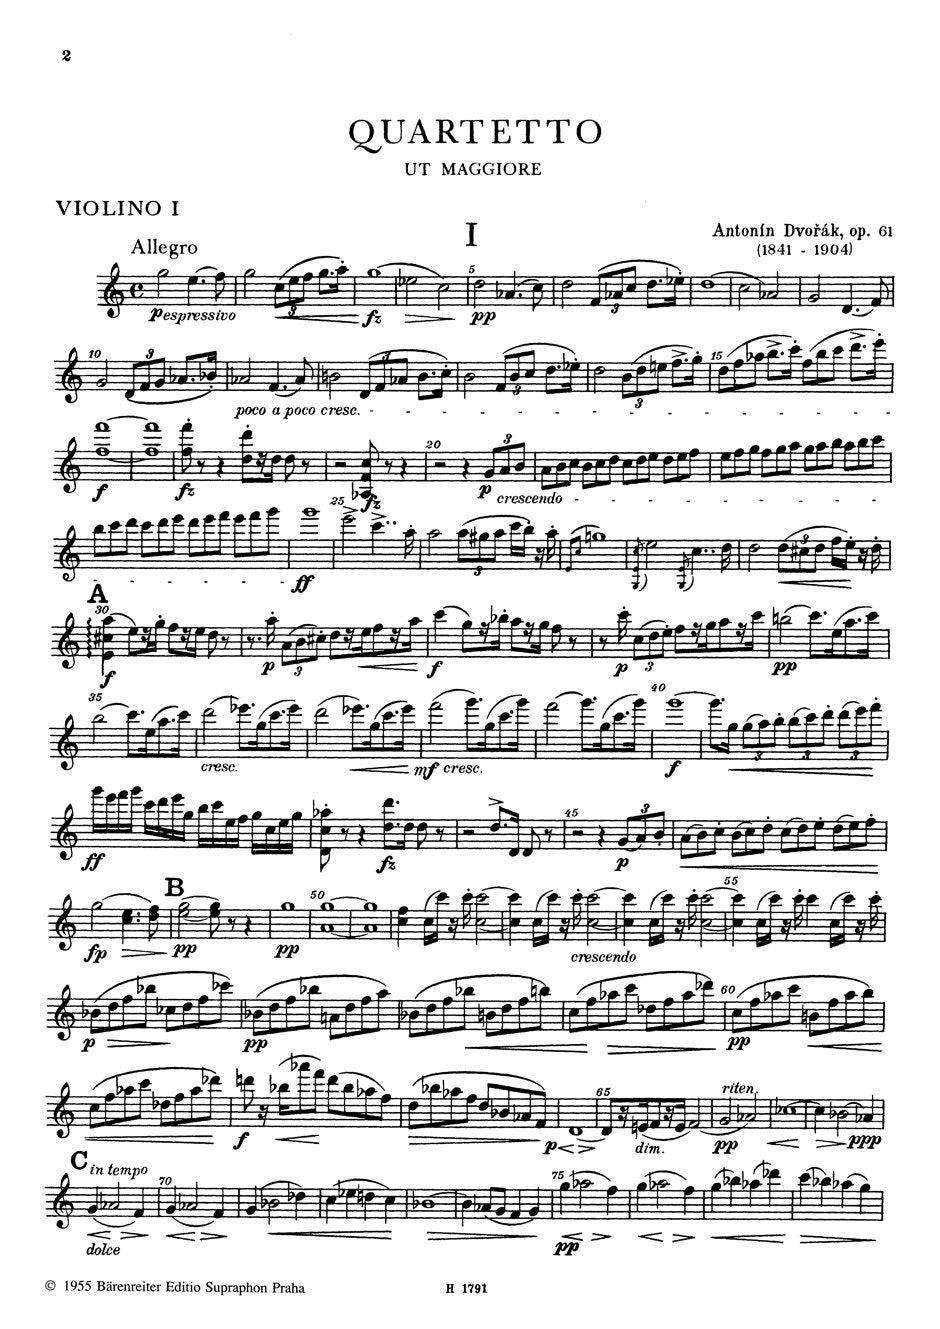 Dvořák: String Quartet No. 11 in C Major, Op. 61